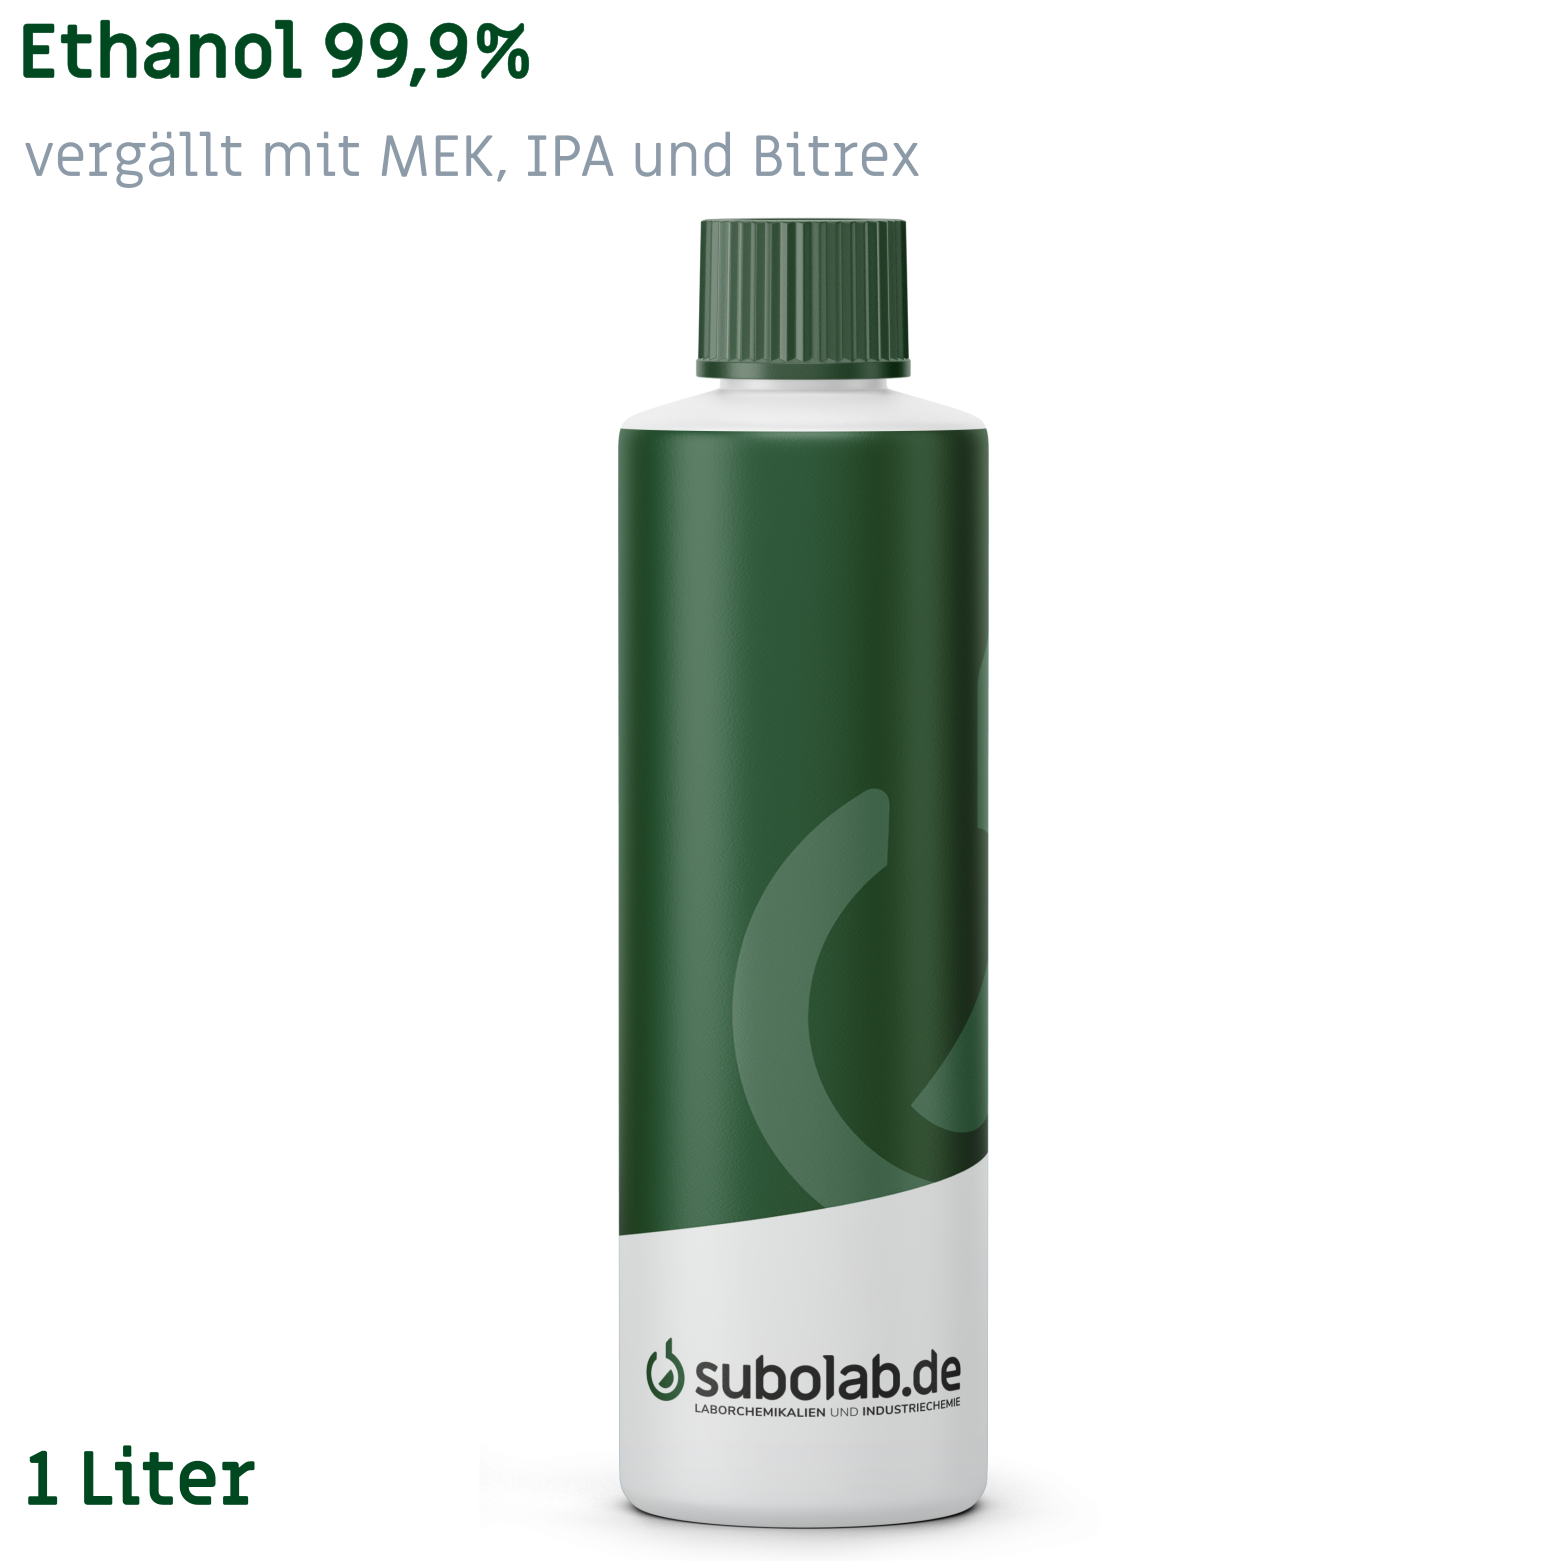 Bild von Ethanol 99,9% vergällt mit MEK, IPA und Bitrex (1 Liter)